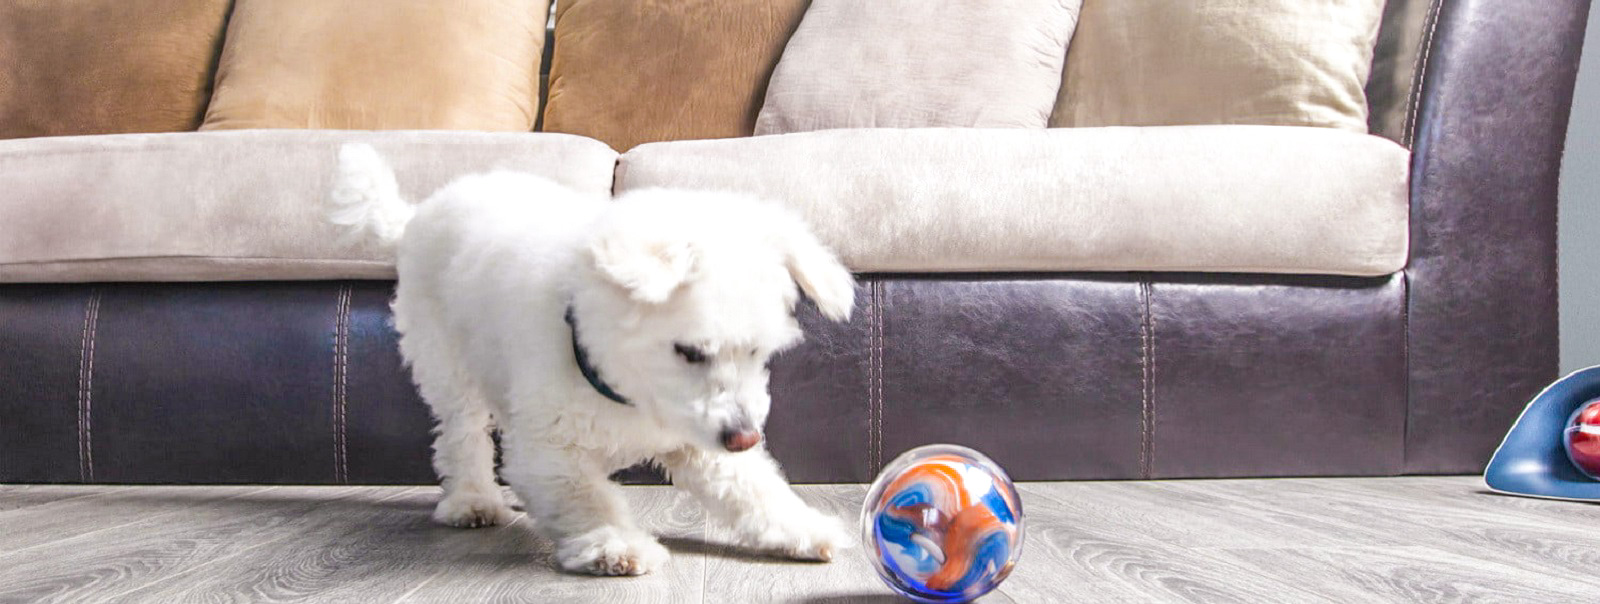 Pebby - розумний м'ячик для домашніх тварин